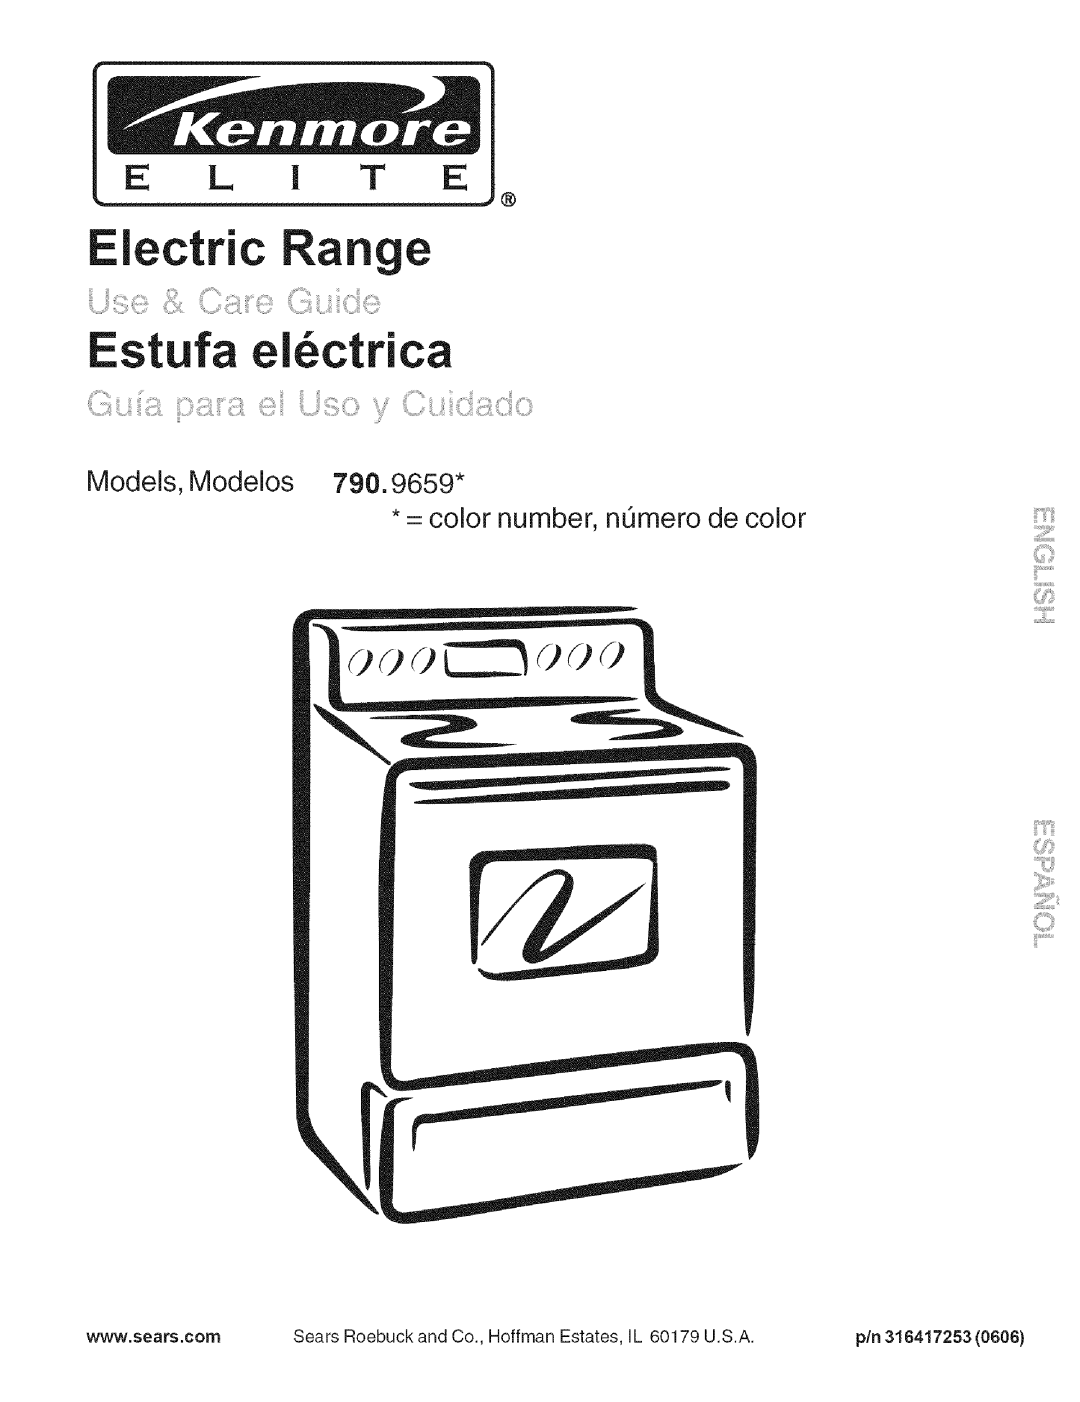 Kenmore 790.9659 manual Models, Modelos = color number, ntJmero de color, Electric Range Estufa el6ctrica, E L I T E, pin 